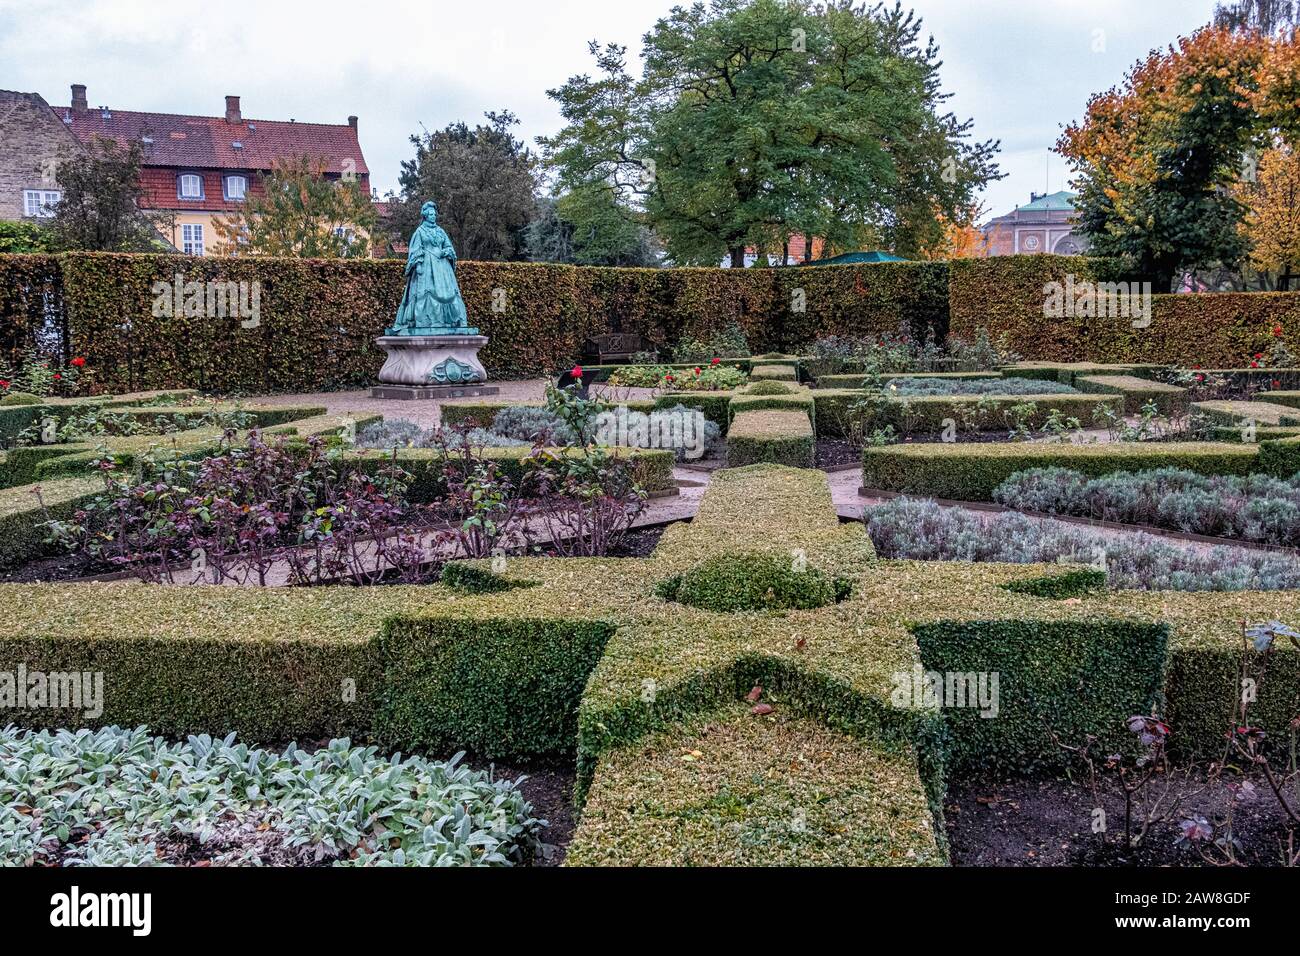 Jardin de roses dans les jardins royaux du château de Rosenborg à Copenhague, Danemark. Jardin formel conçu par Ingwer Ingwersen Banque D'Images